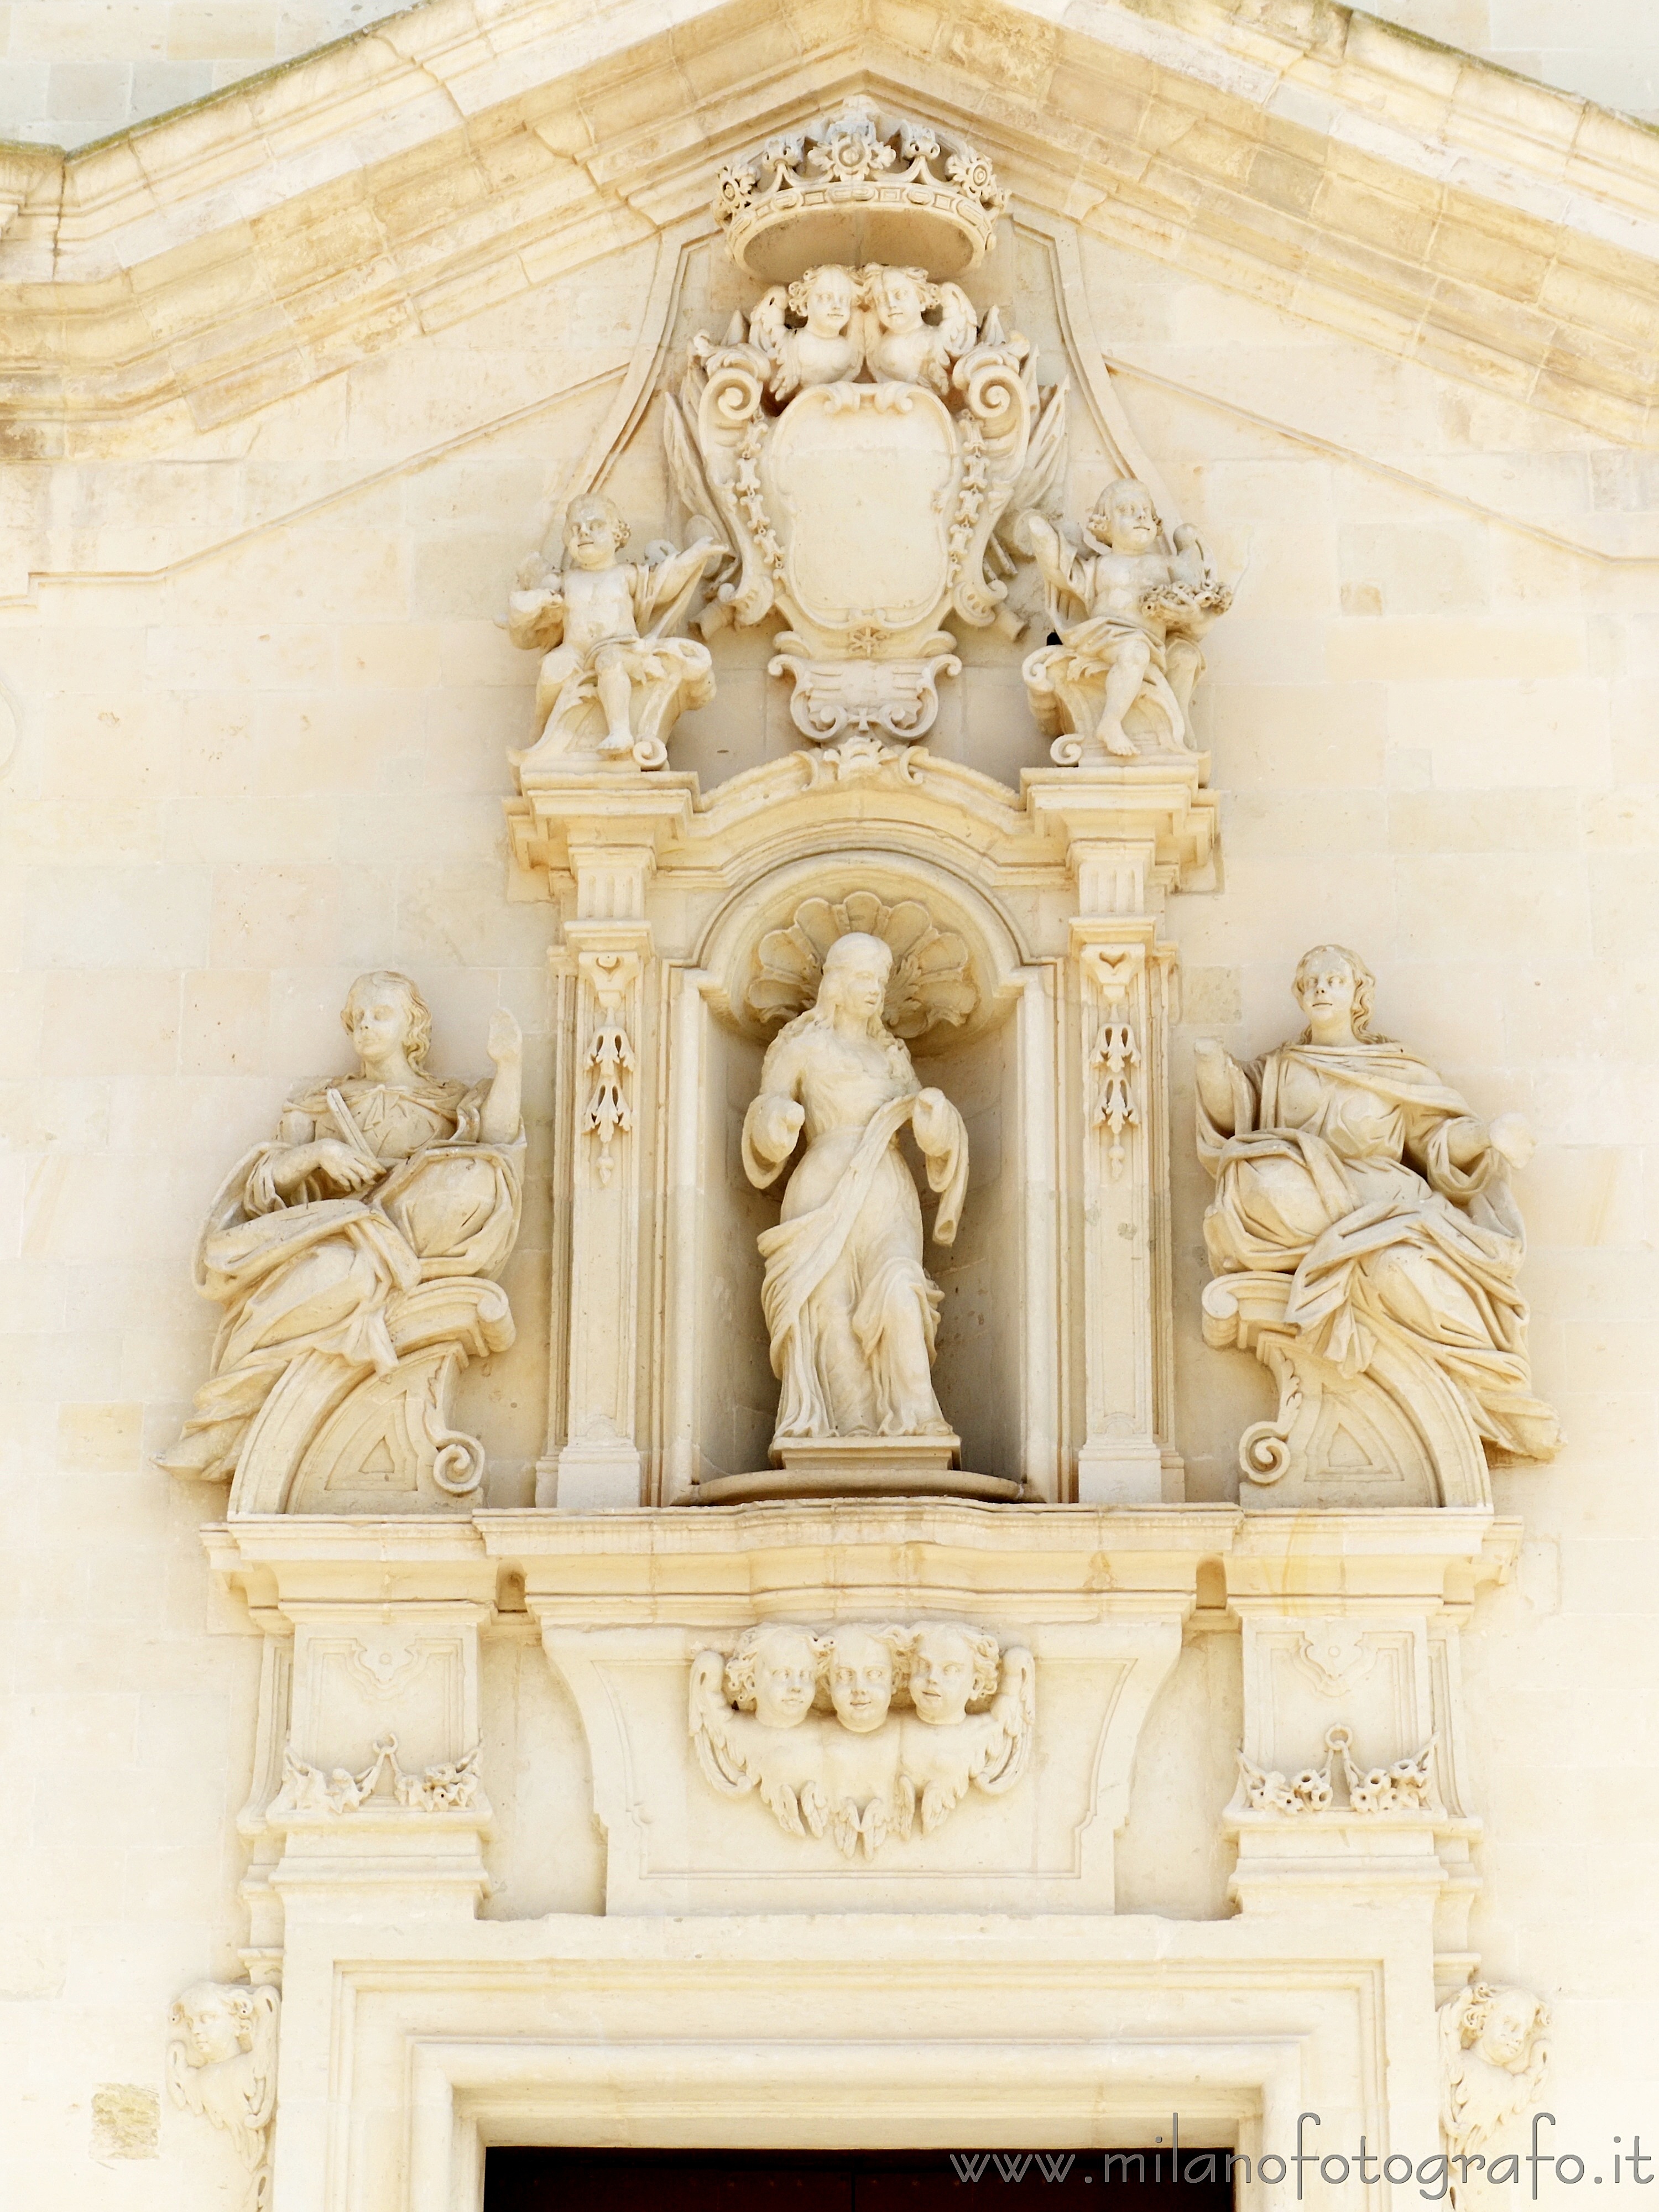 Uggiano La Chiesa (Lecce): Decorazioni barocche sopra il portone della Chiesa di Santa Maria Maddalena - Uggiano La Chiesa (Lecce)